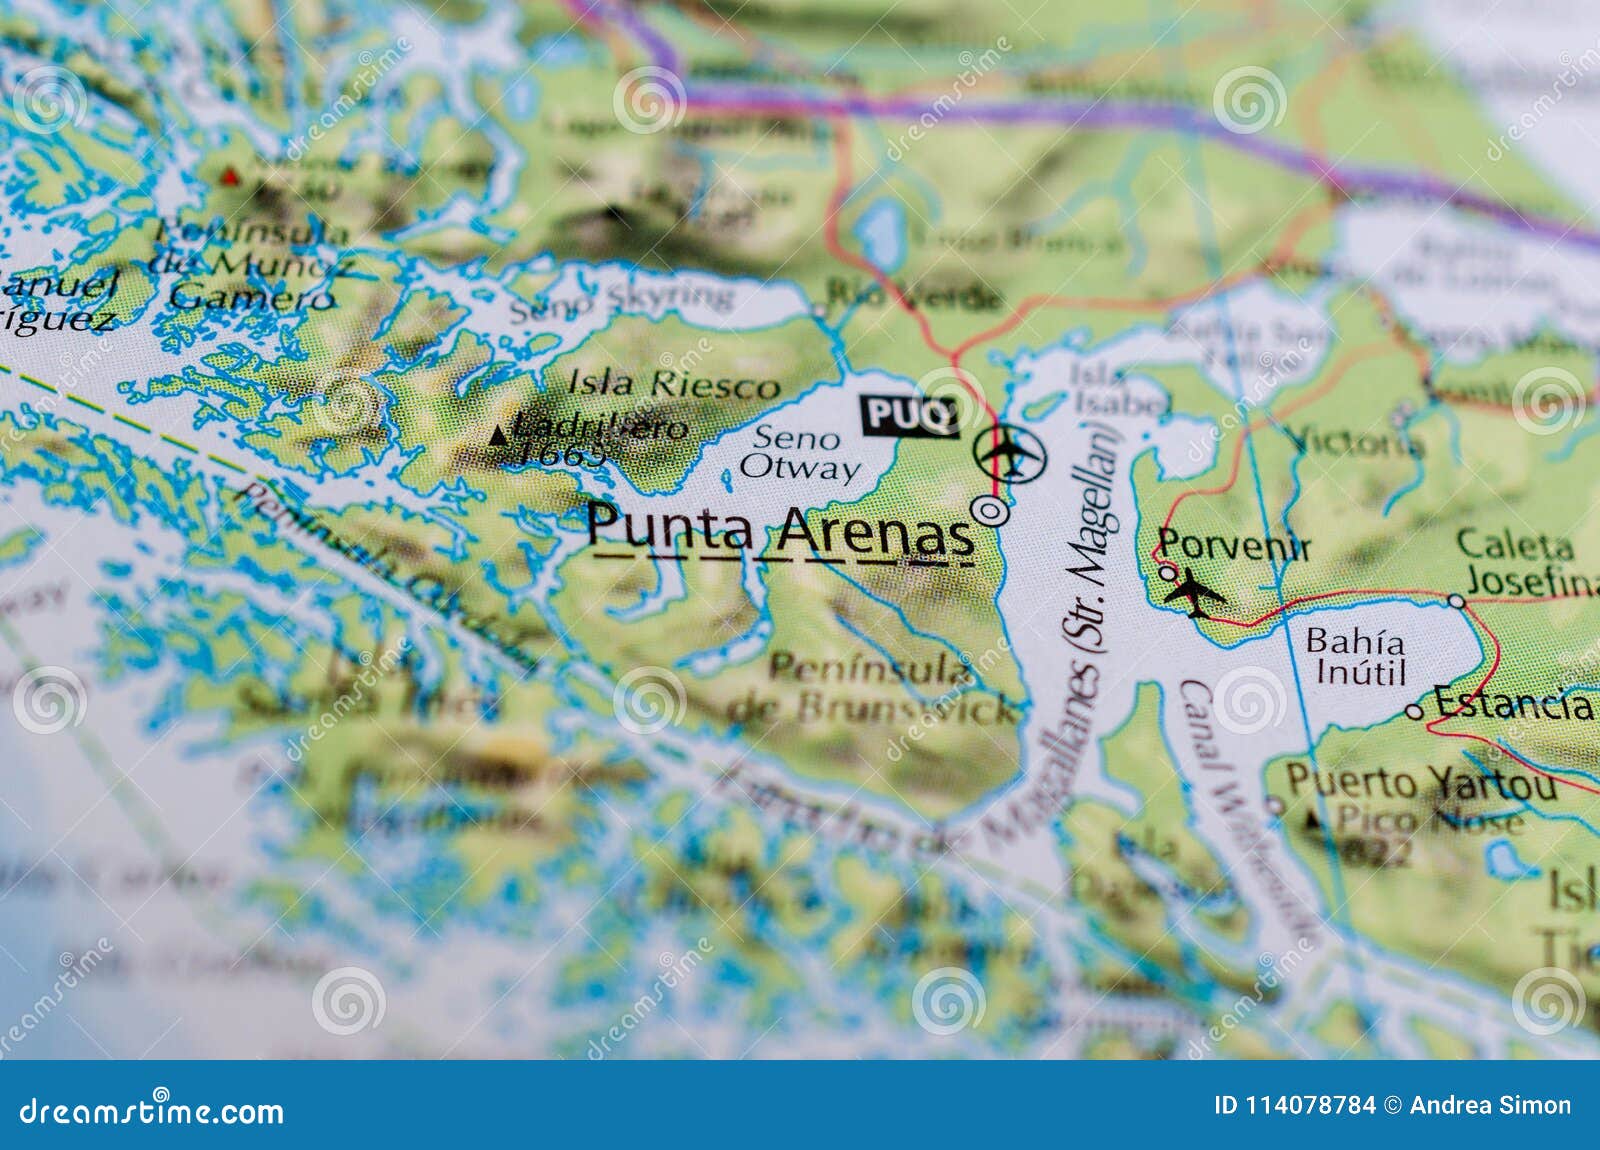 punta arenas on map